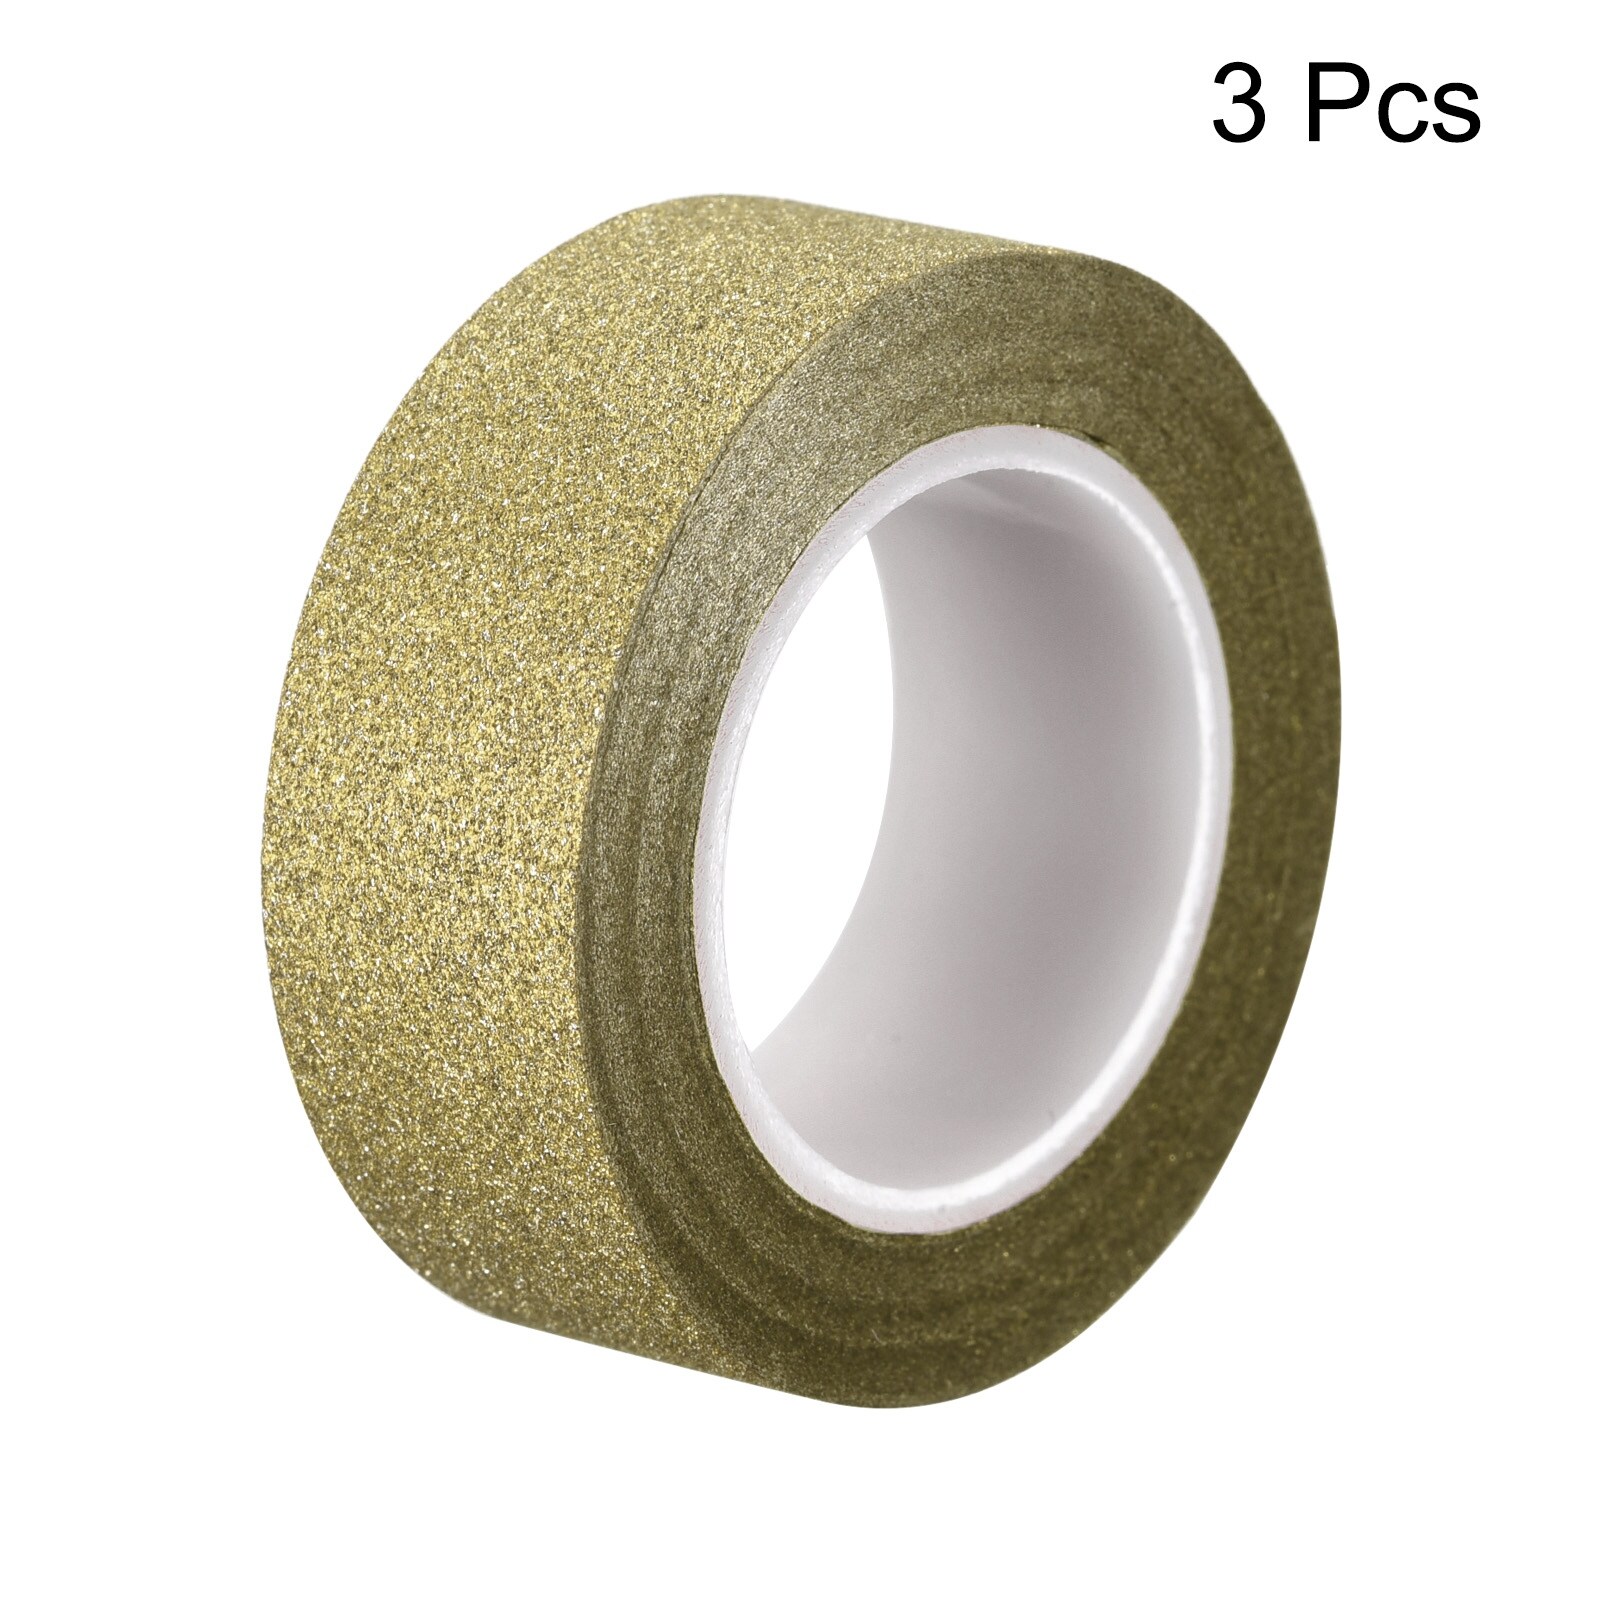 Metallic Mirror Tape 32.8 Ft x 1.2 DIY Self Adhesive Tape Rose Gold